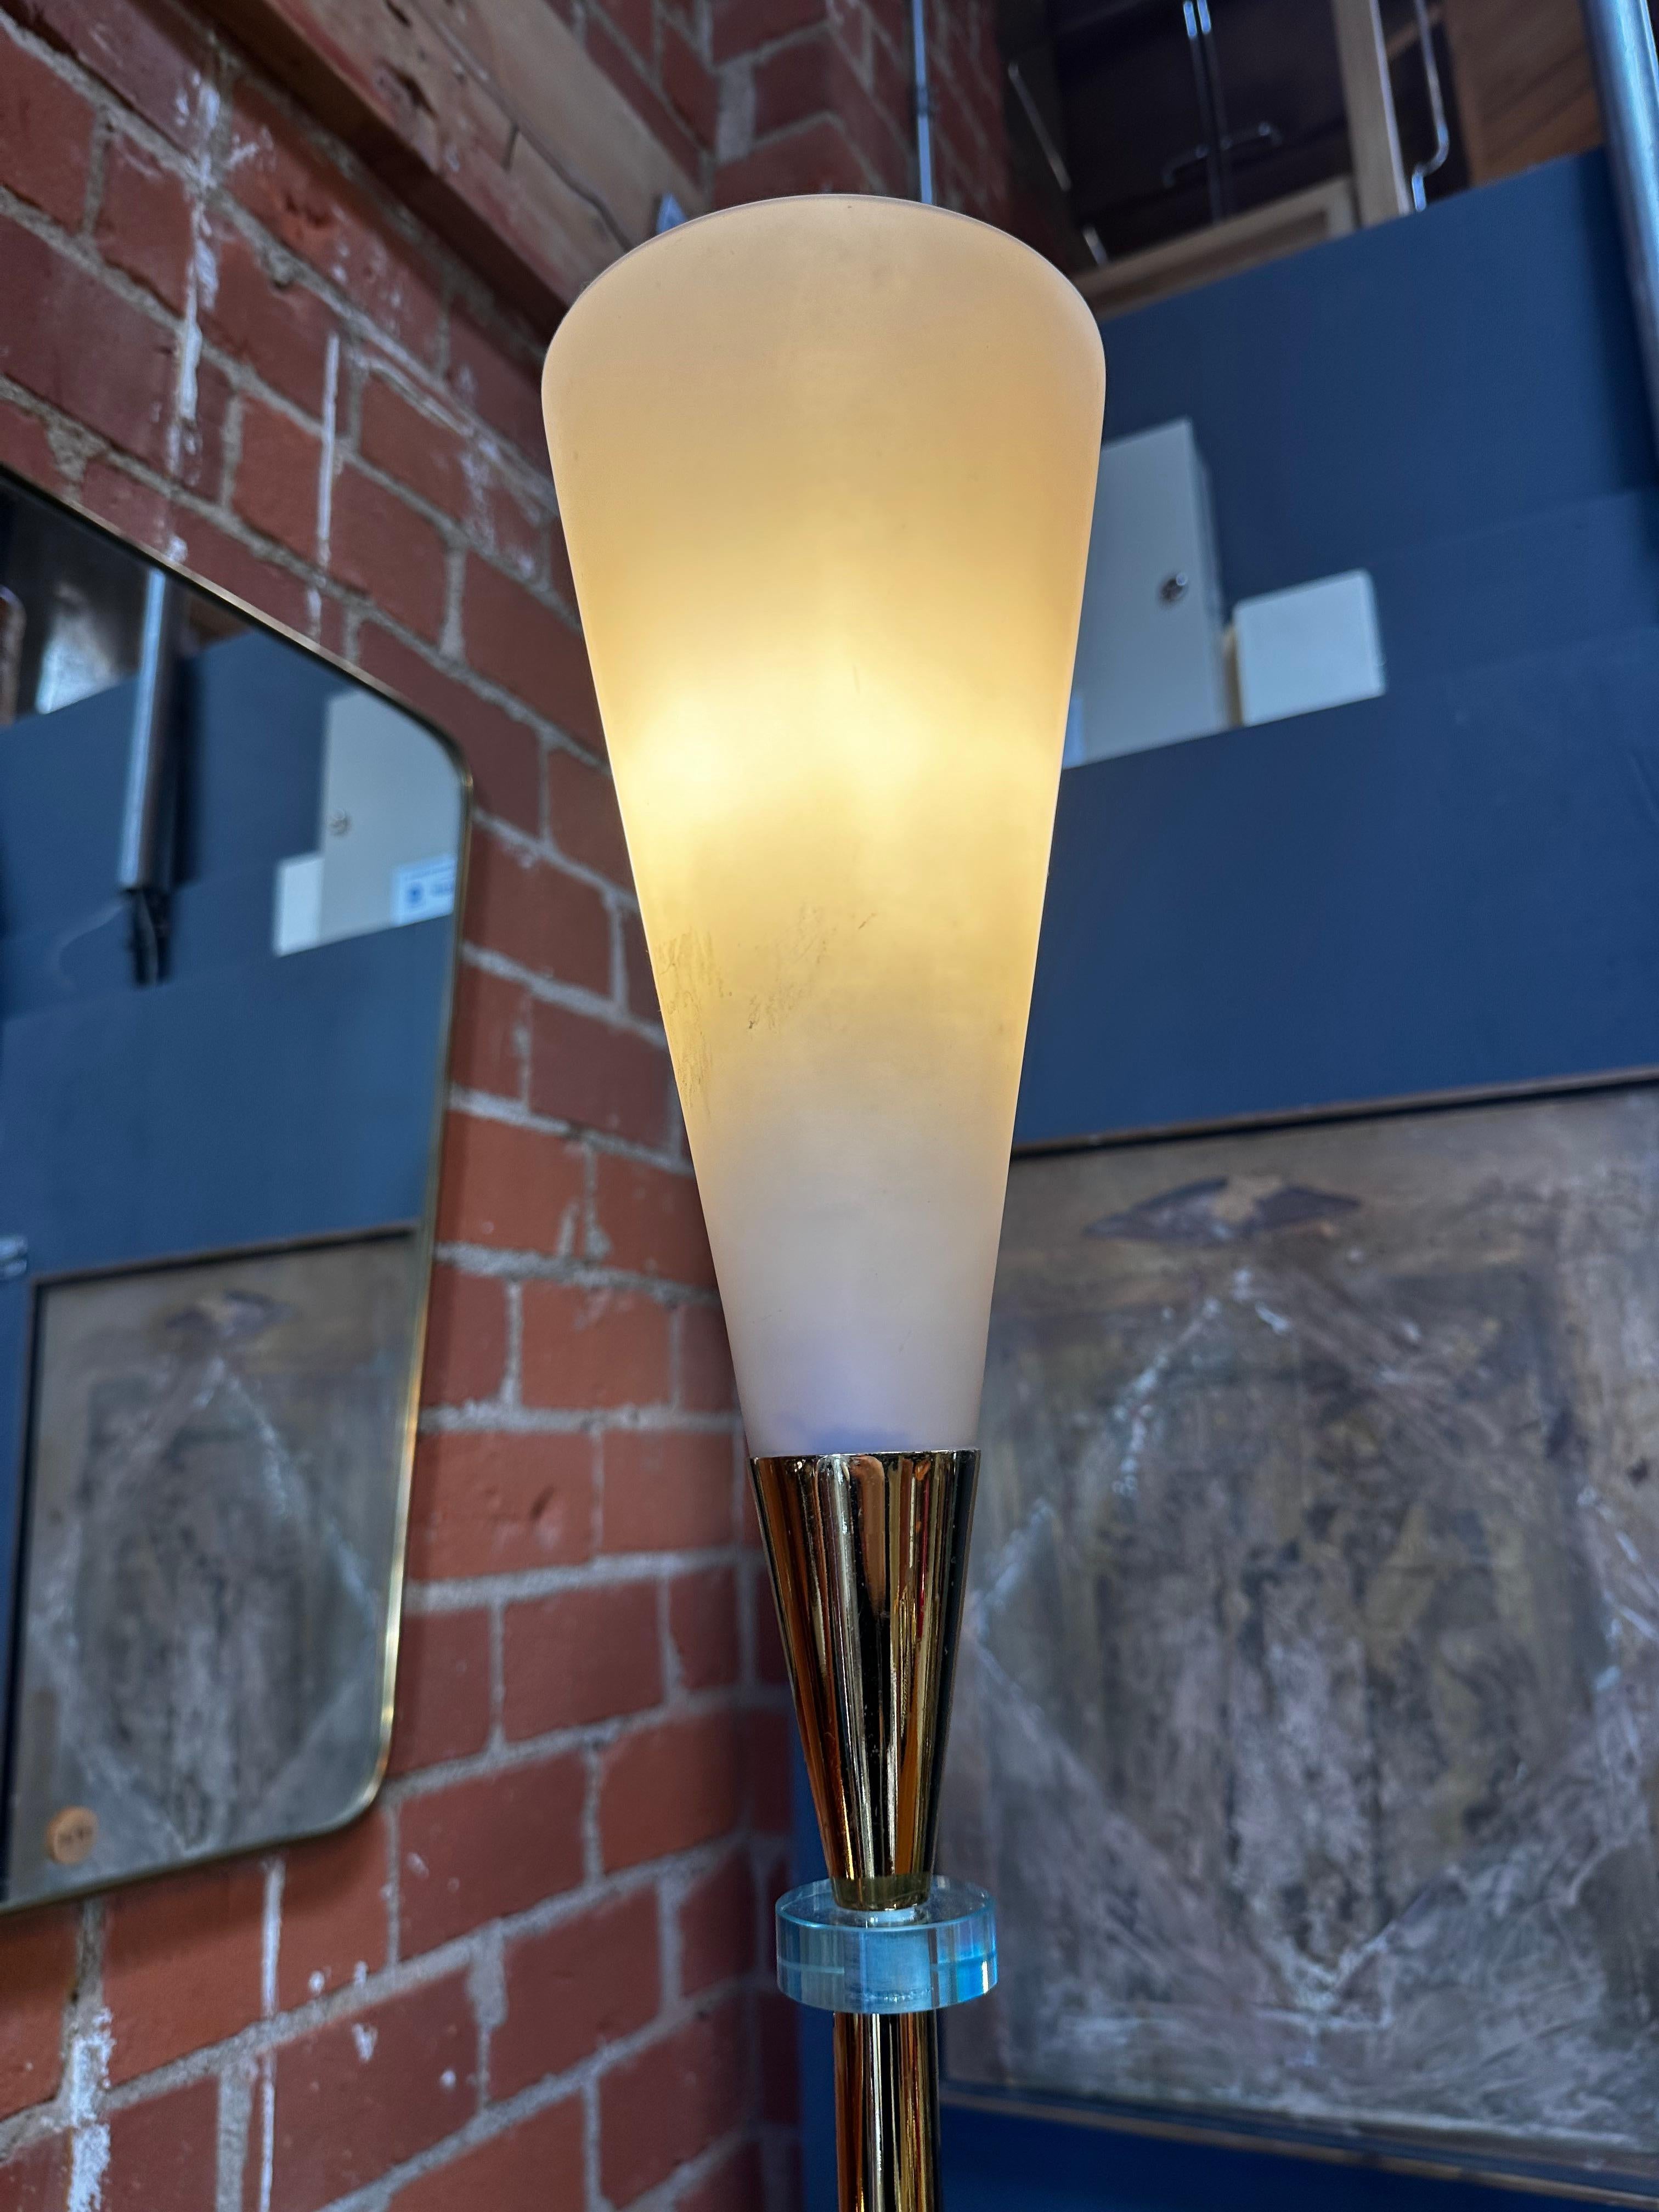 Die Mid Century Italian Brass and Glass Floor Lamp aus den 1960er Jahren ist eine elegante und raffinierte Leuchte. Mit ihrer harmonischen Kombination aus Messing und Glas ist diese Leuchte ein Beispiel für die eleganten Designtrends der